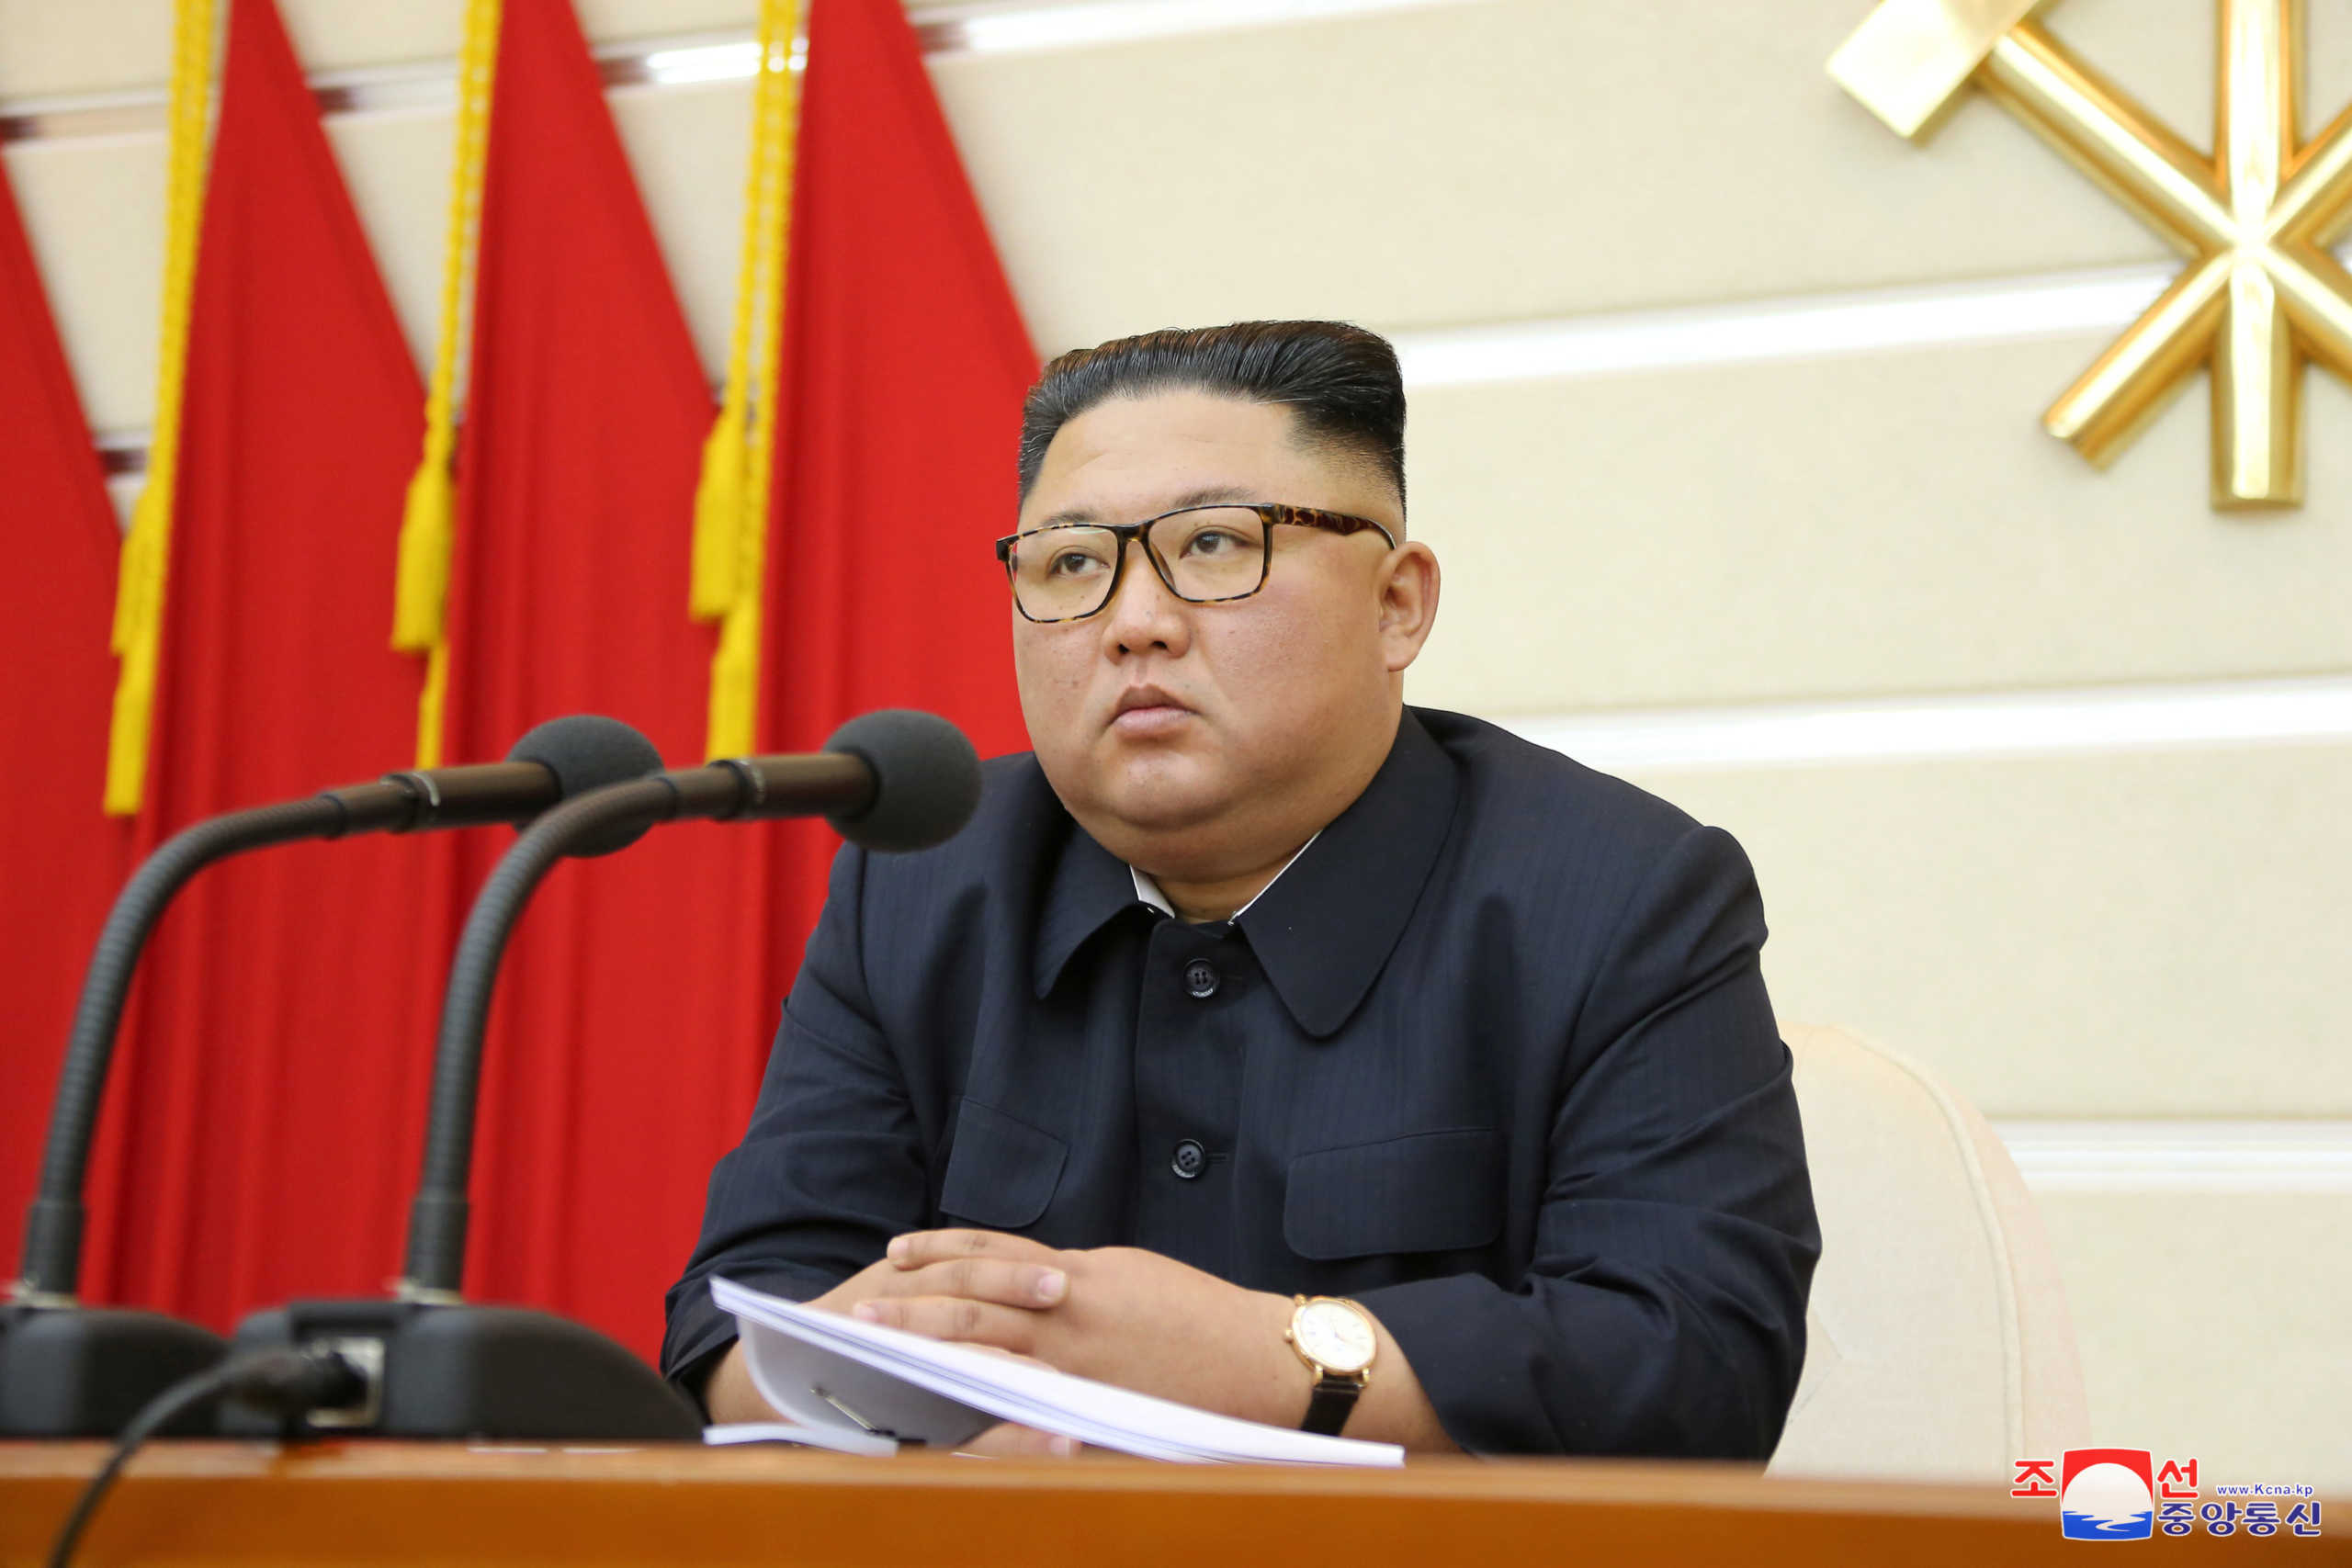 Ο κορονοϊός… ενώνει! Ο Κιμ Γιόνγκ Ουν εύχεται “περαστικά” στη Νότια Κορέα